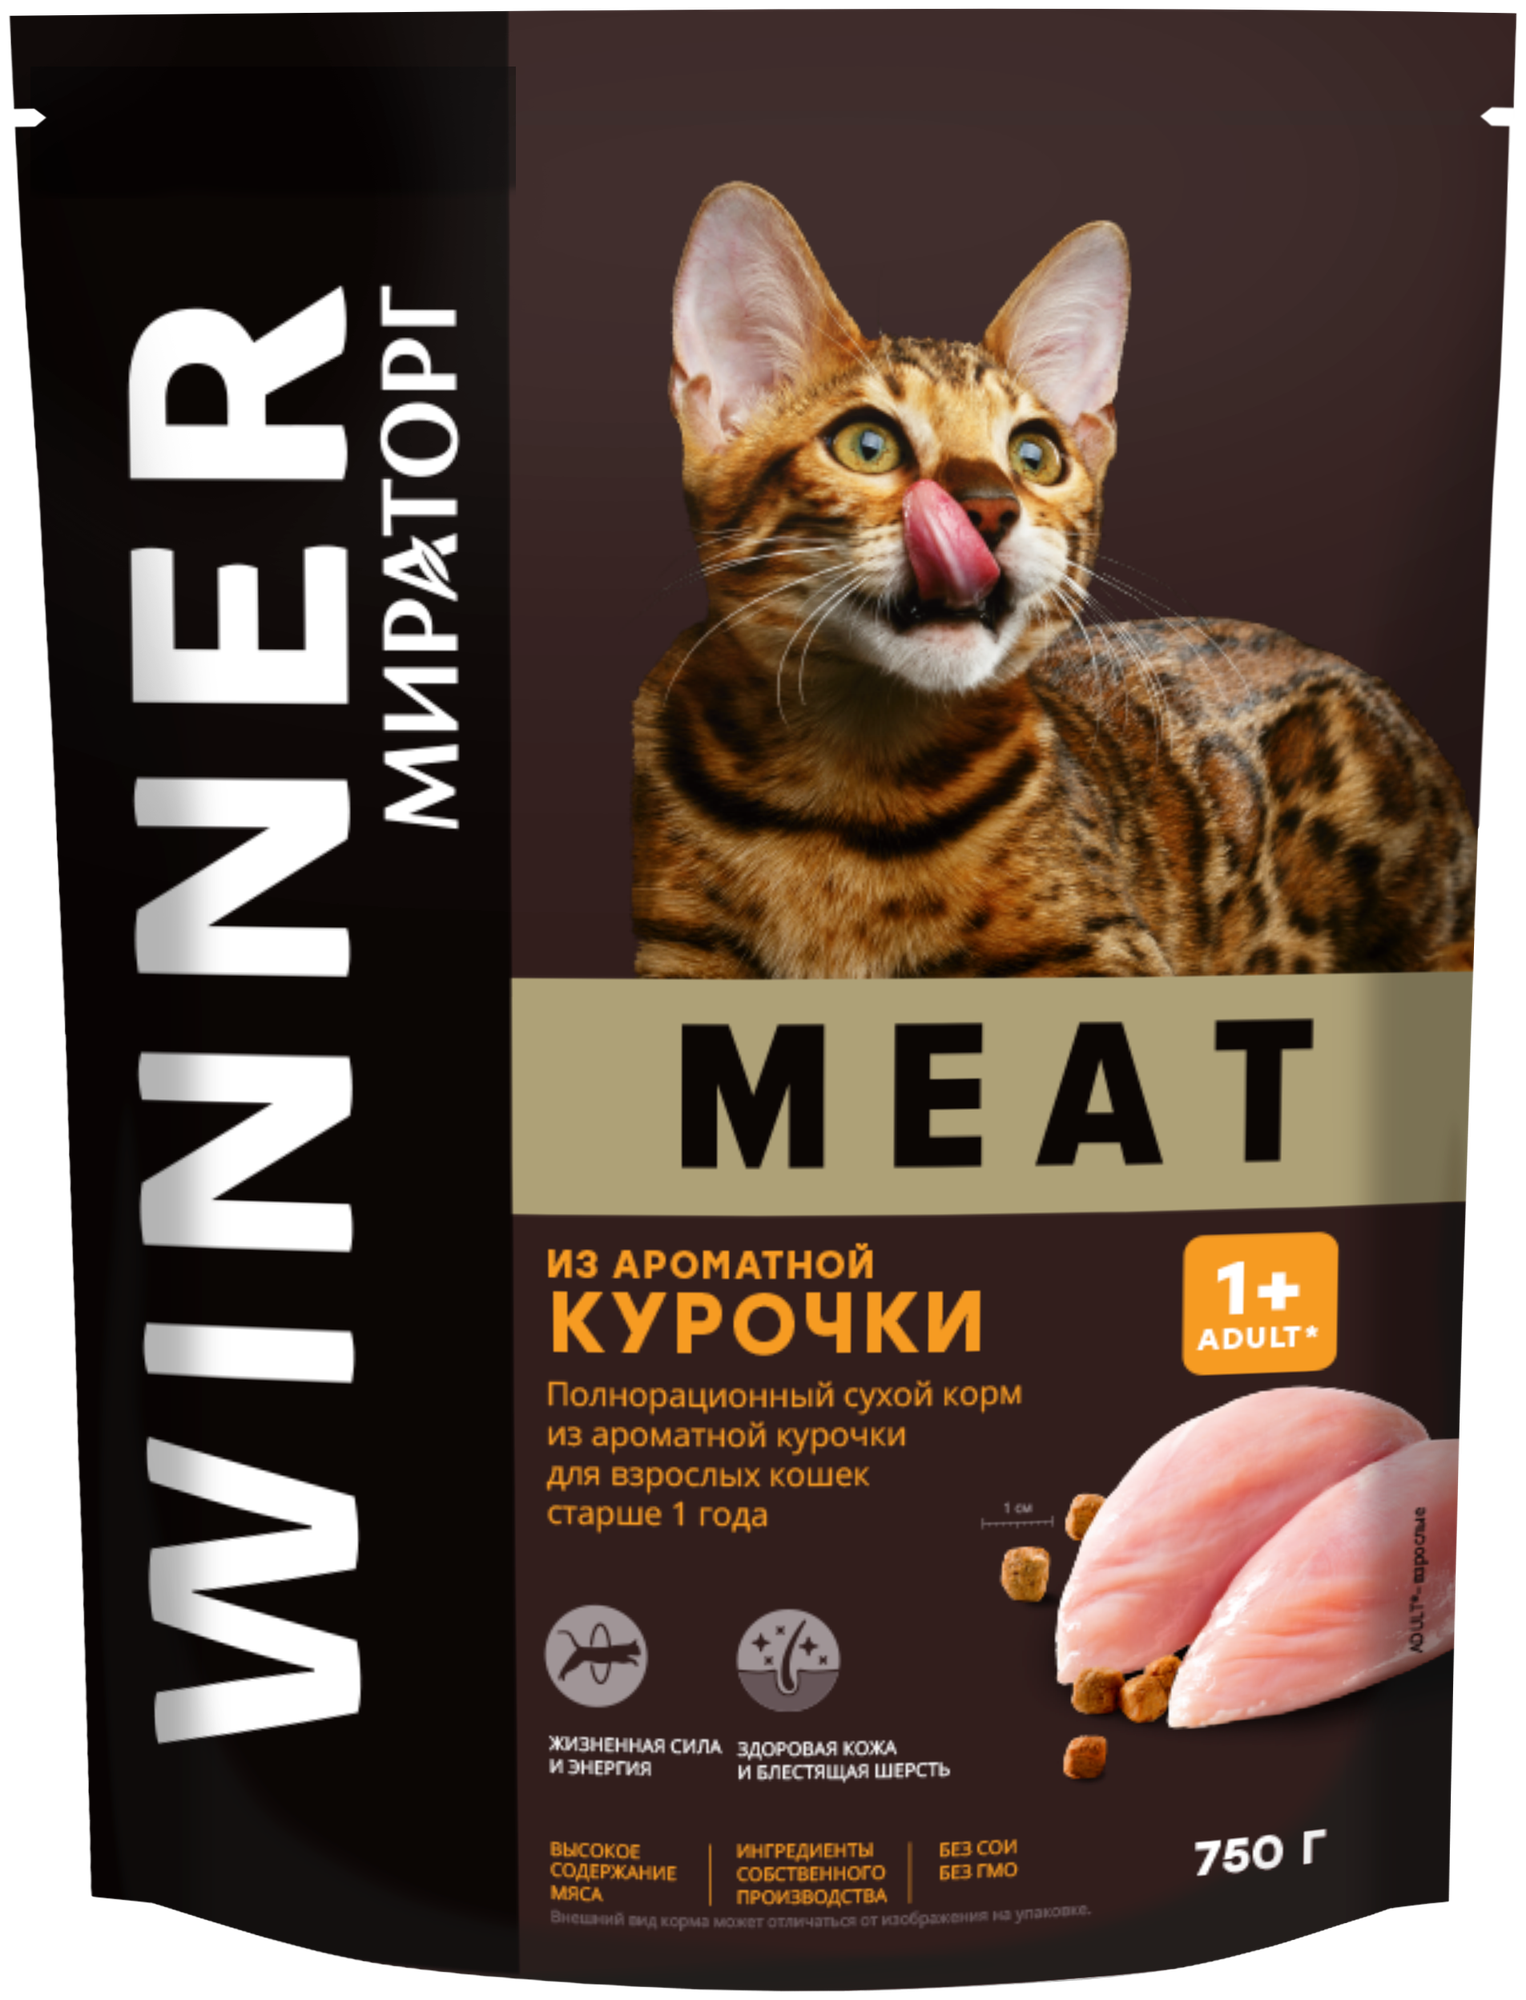 Сухой корм Winner MEAT для взрослых кошек старше 1 года из ароматной курочки 750гр